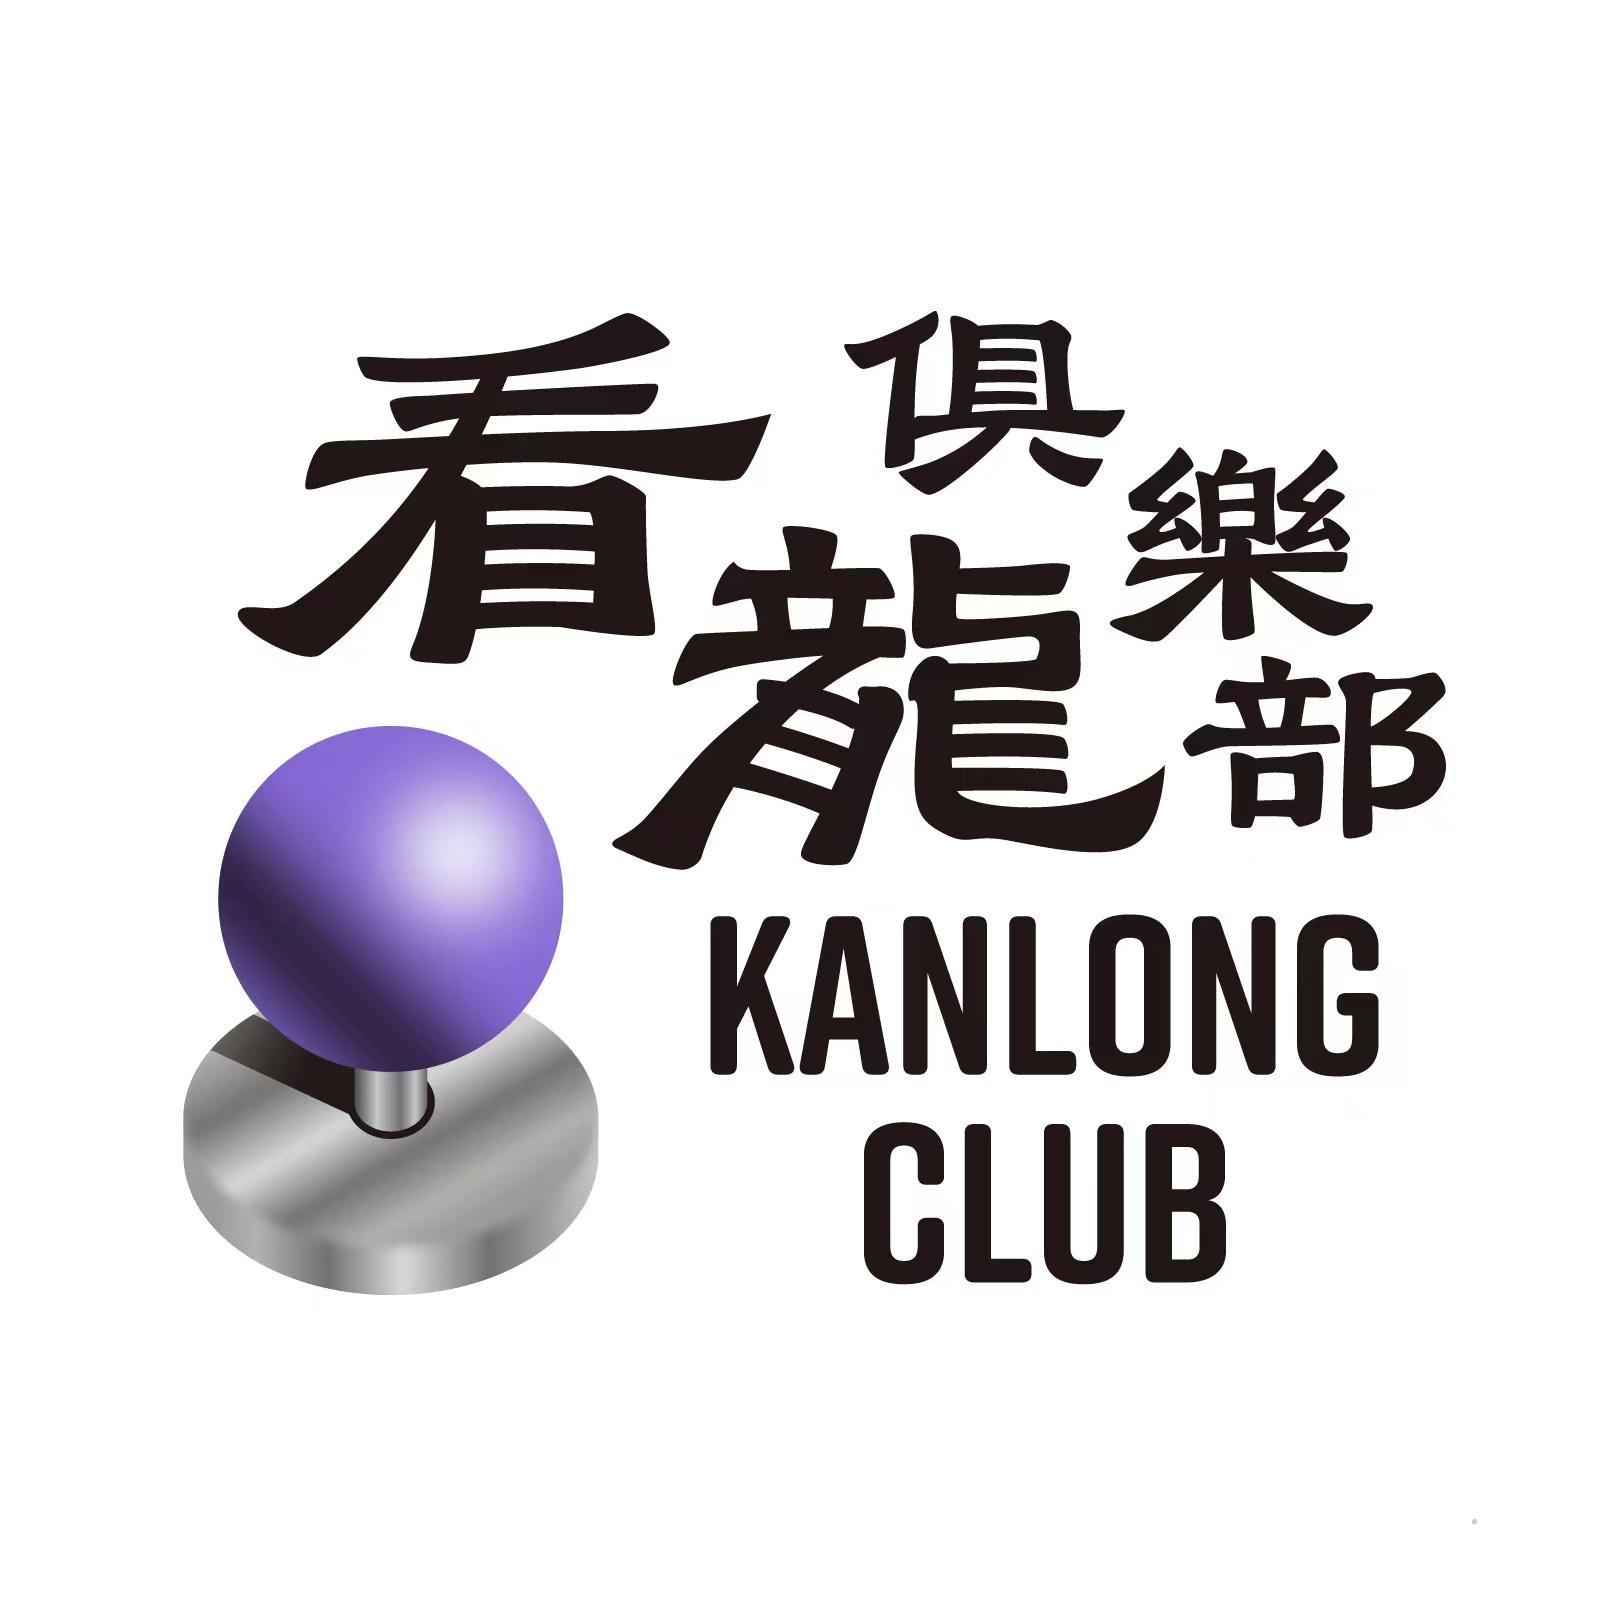 看龙俱乐部 KANLONG CLUB教育娱乐